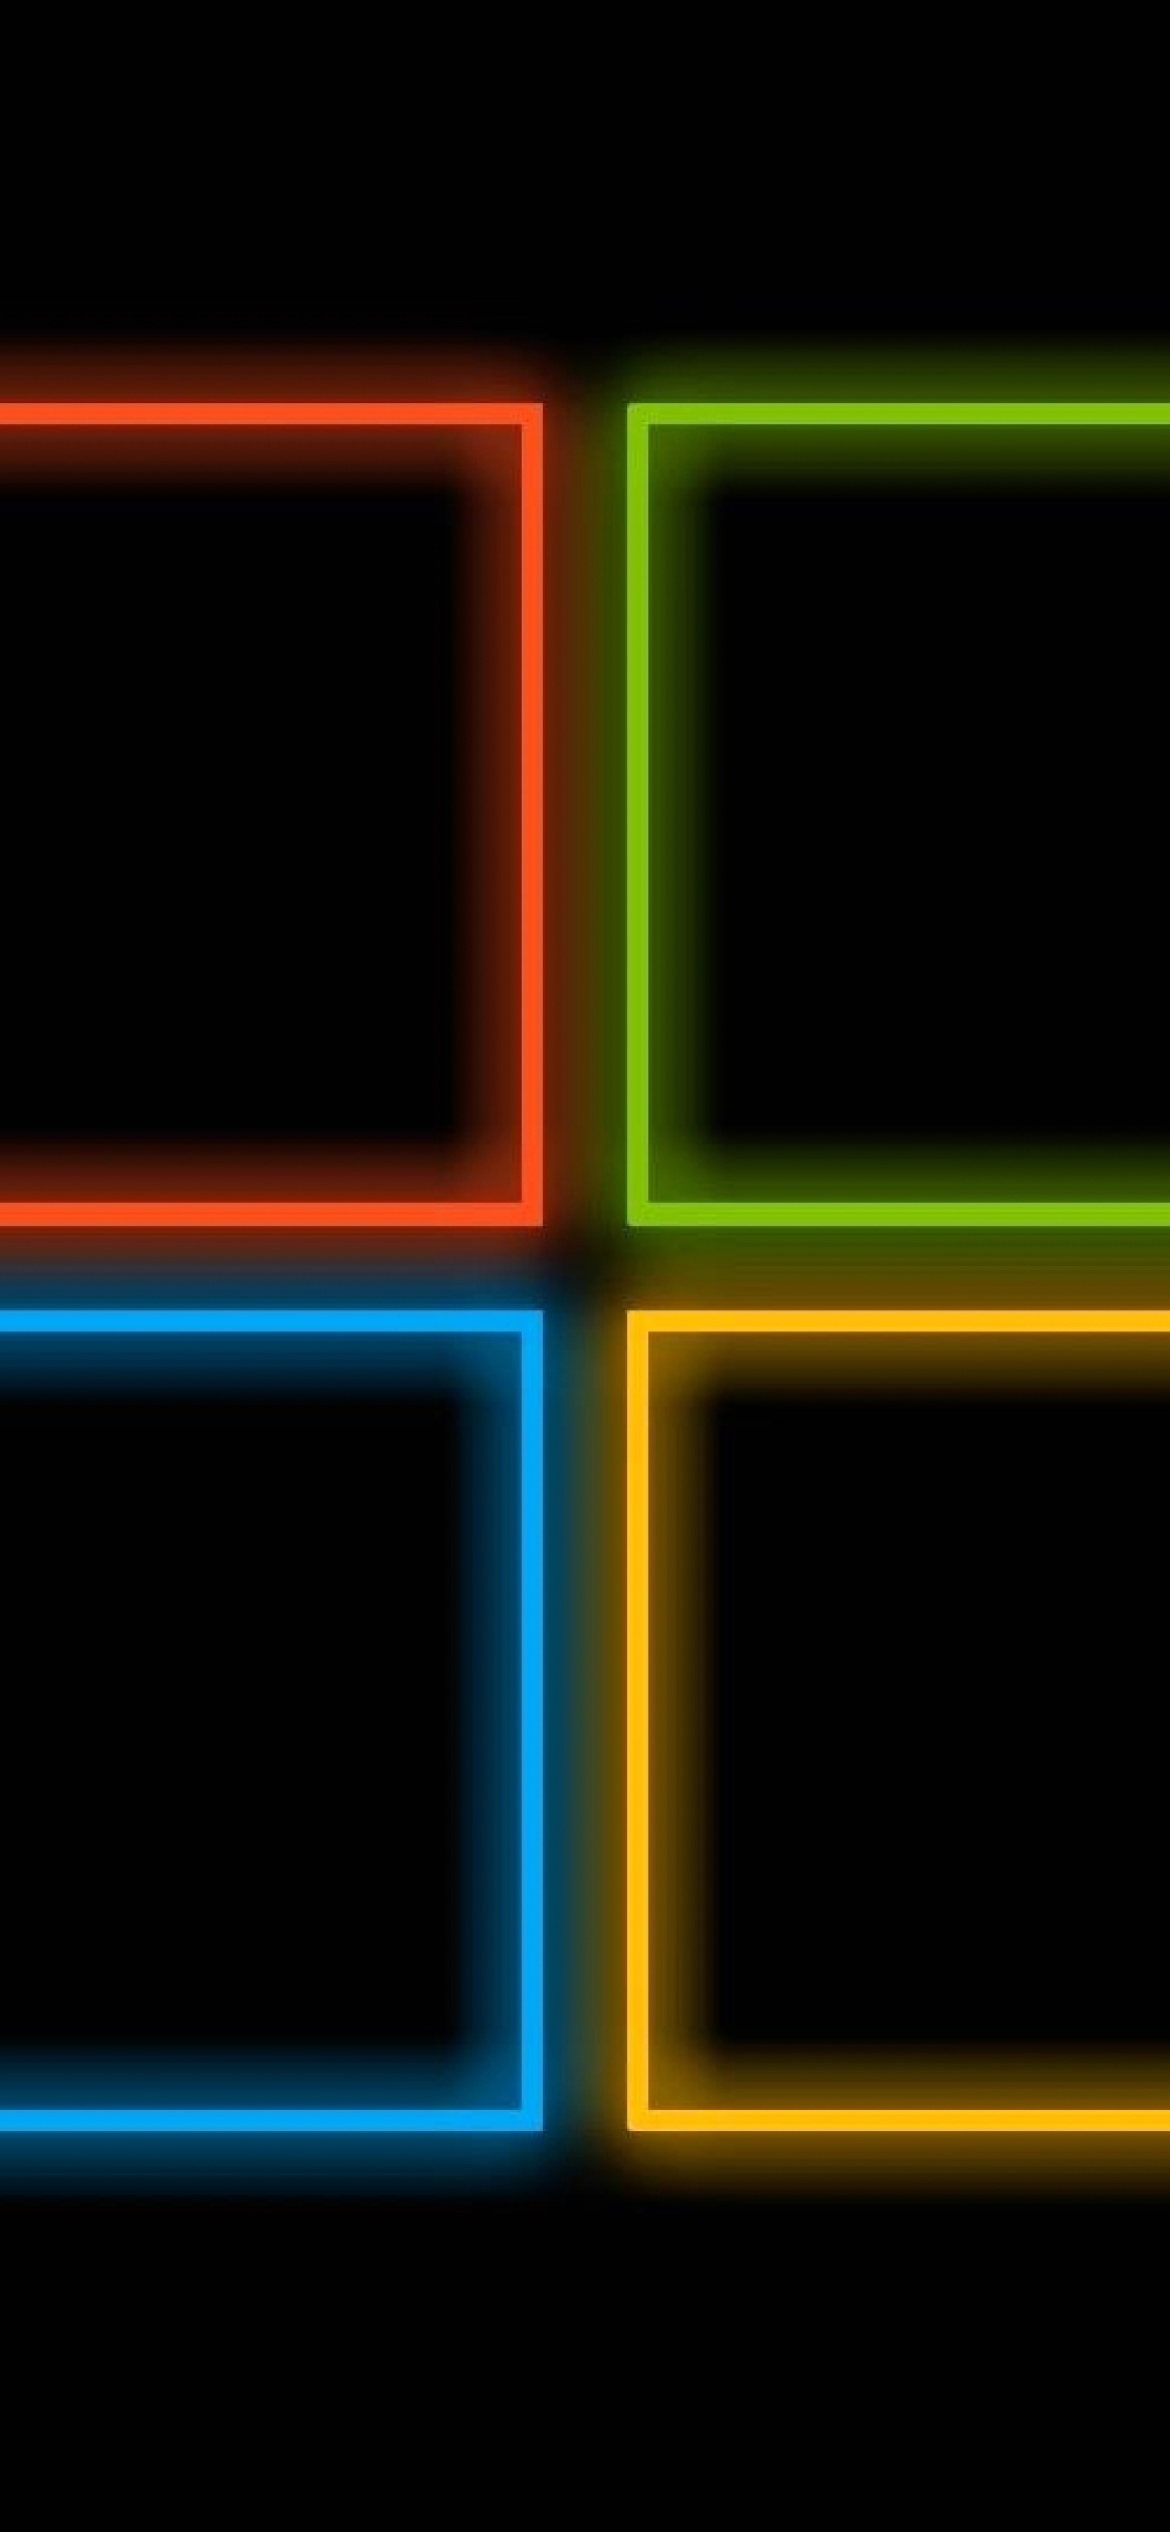 OS Windows 10 Neon wallpaper 1170x2532